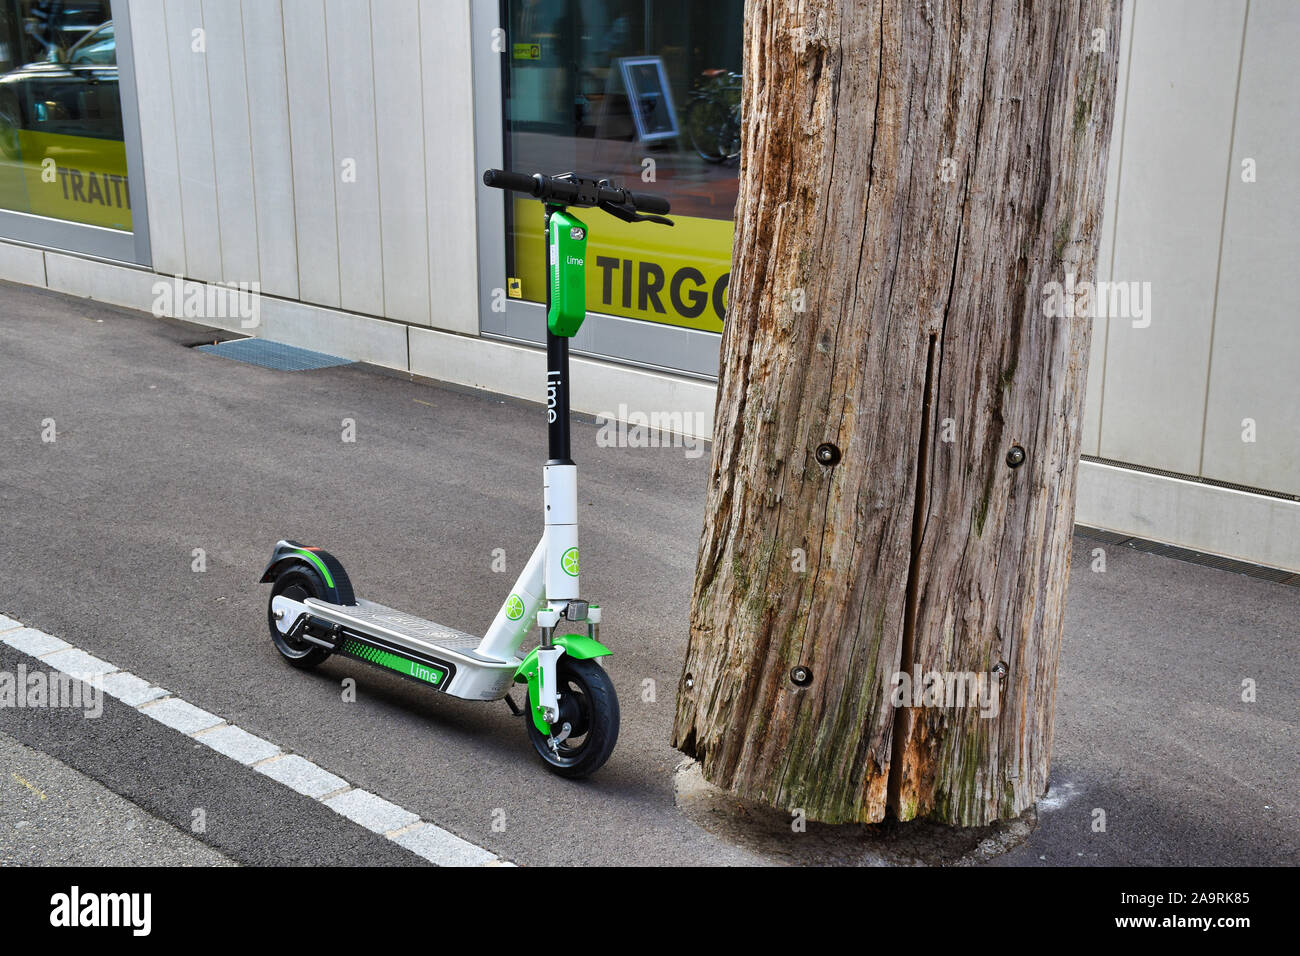 Zurigo, Svizzera, 11.14.2019: moderno, calce elettrico scooter condiviso vicino a un trunk per le strade di Zurigo Foto Stock